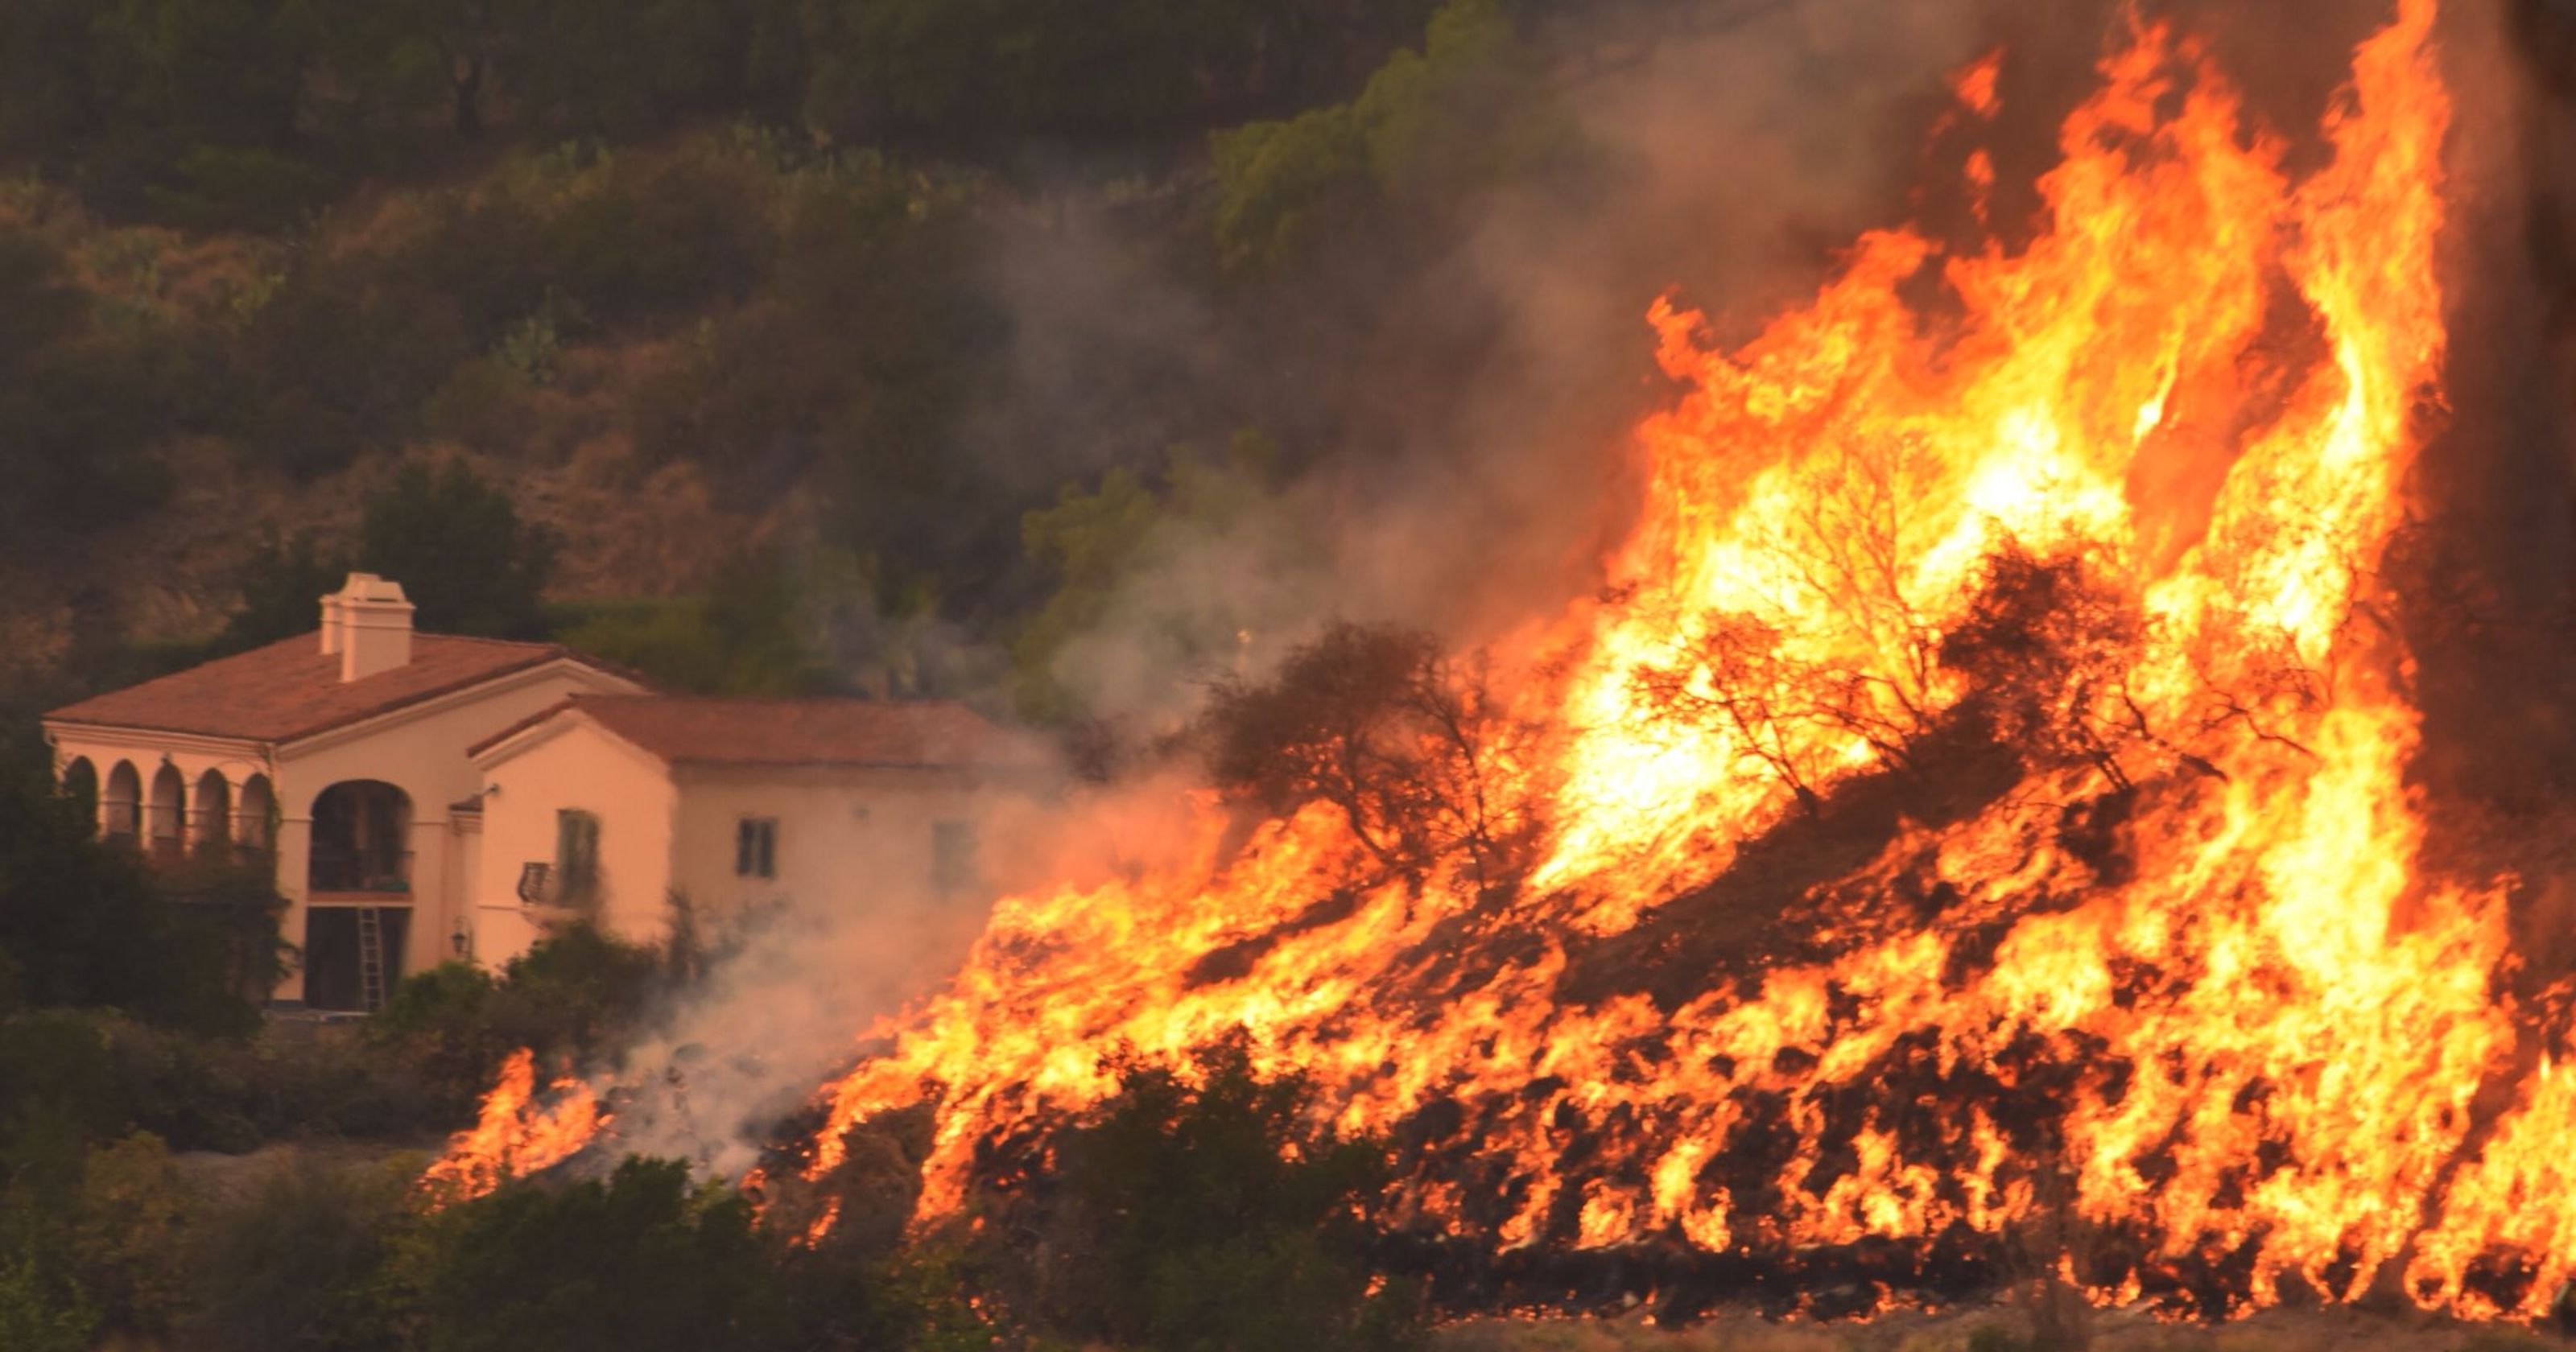 California's Thomas Fire winding down as crews gain upper hand